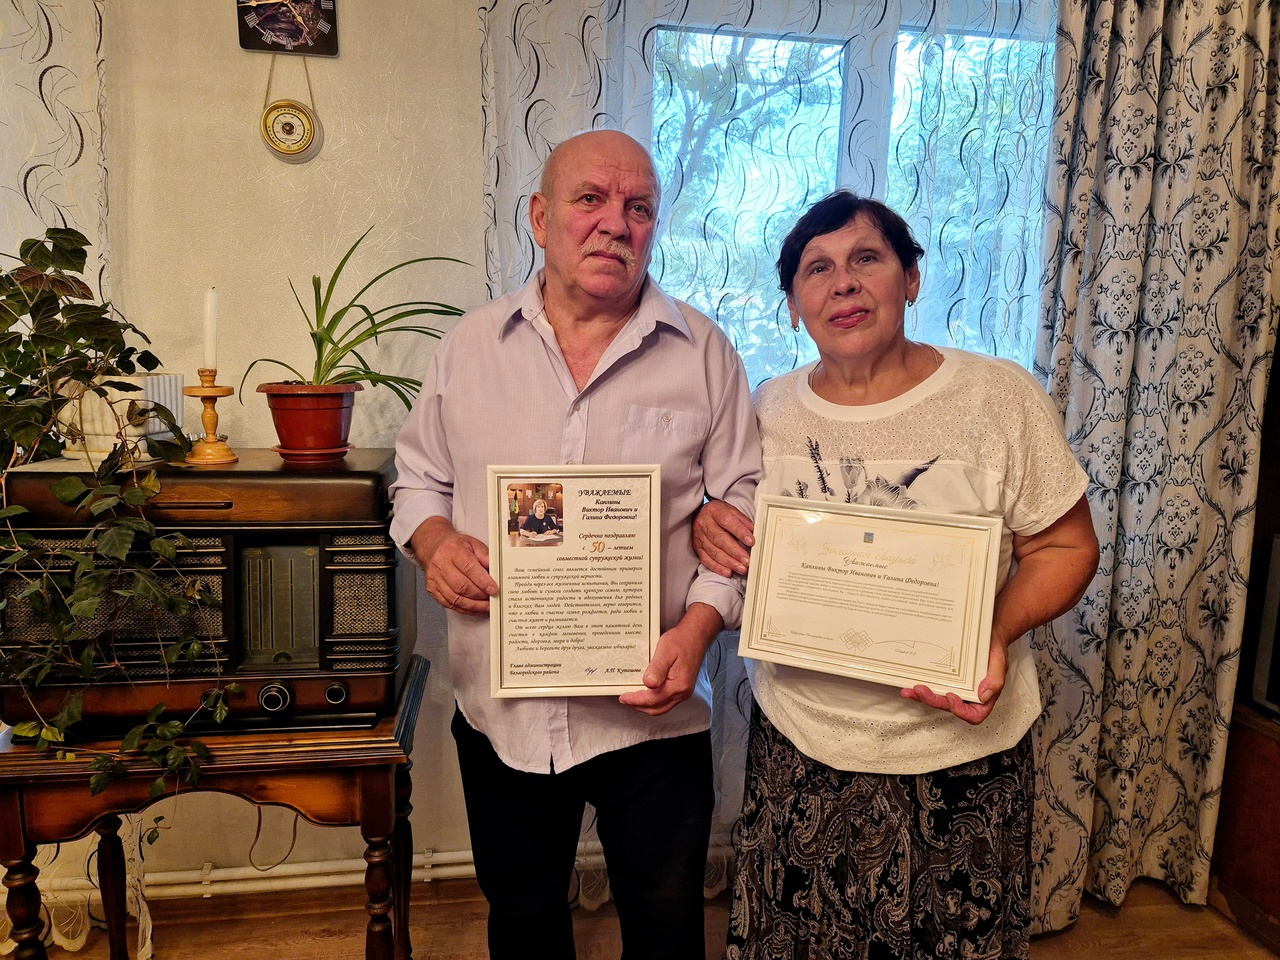 Золотой юбилей супружеской жизни отметили Виктор и Галина Каплины из поселка Дубовое.